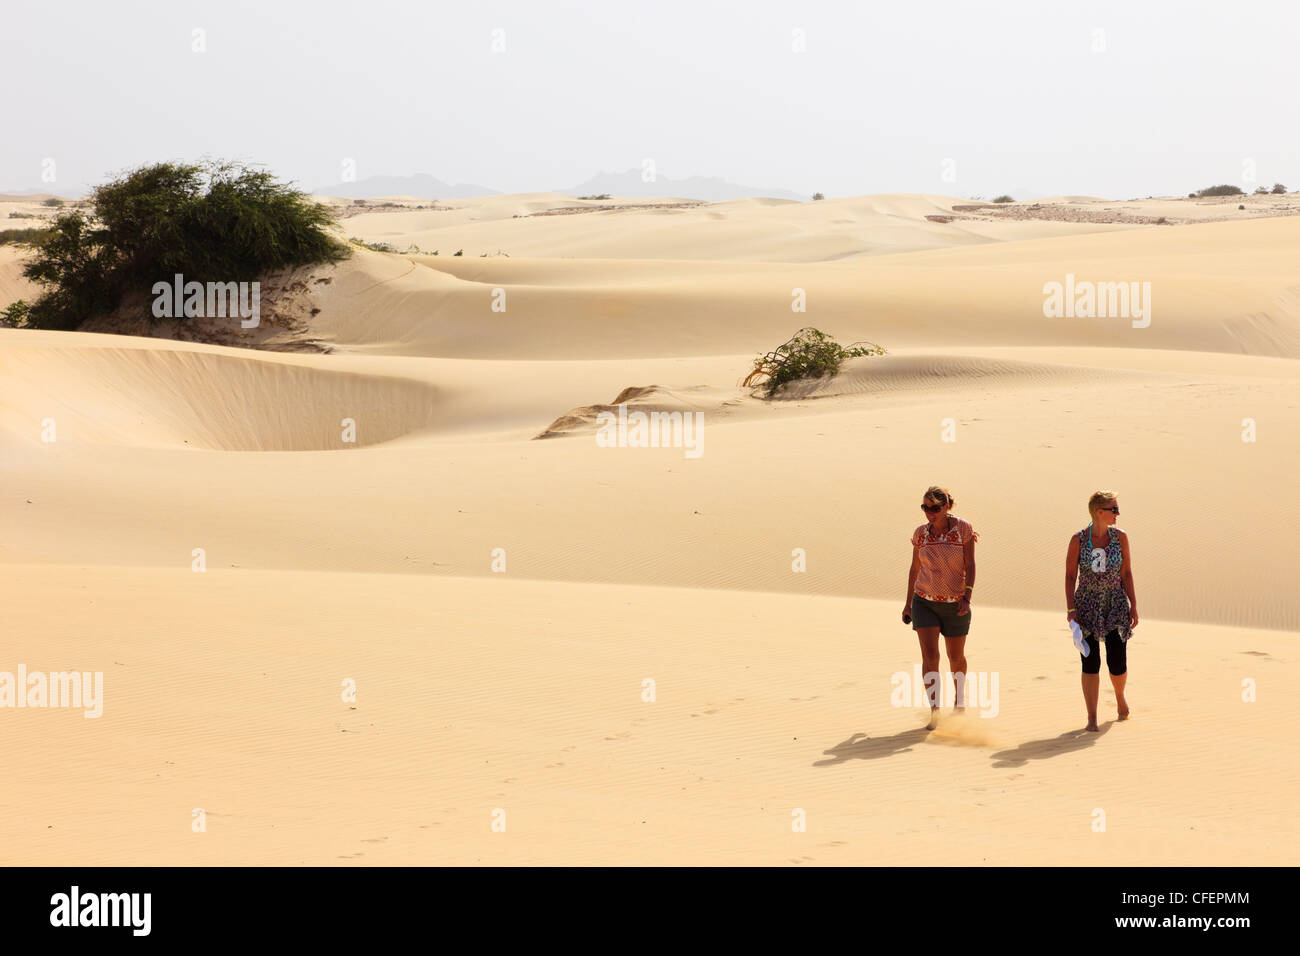 Vue de deux touristes marchant pieds nus sur des dunes de sable du désert vide. Deserto de Viana, Boa Vista, Cap Vert. Banque D'Images